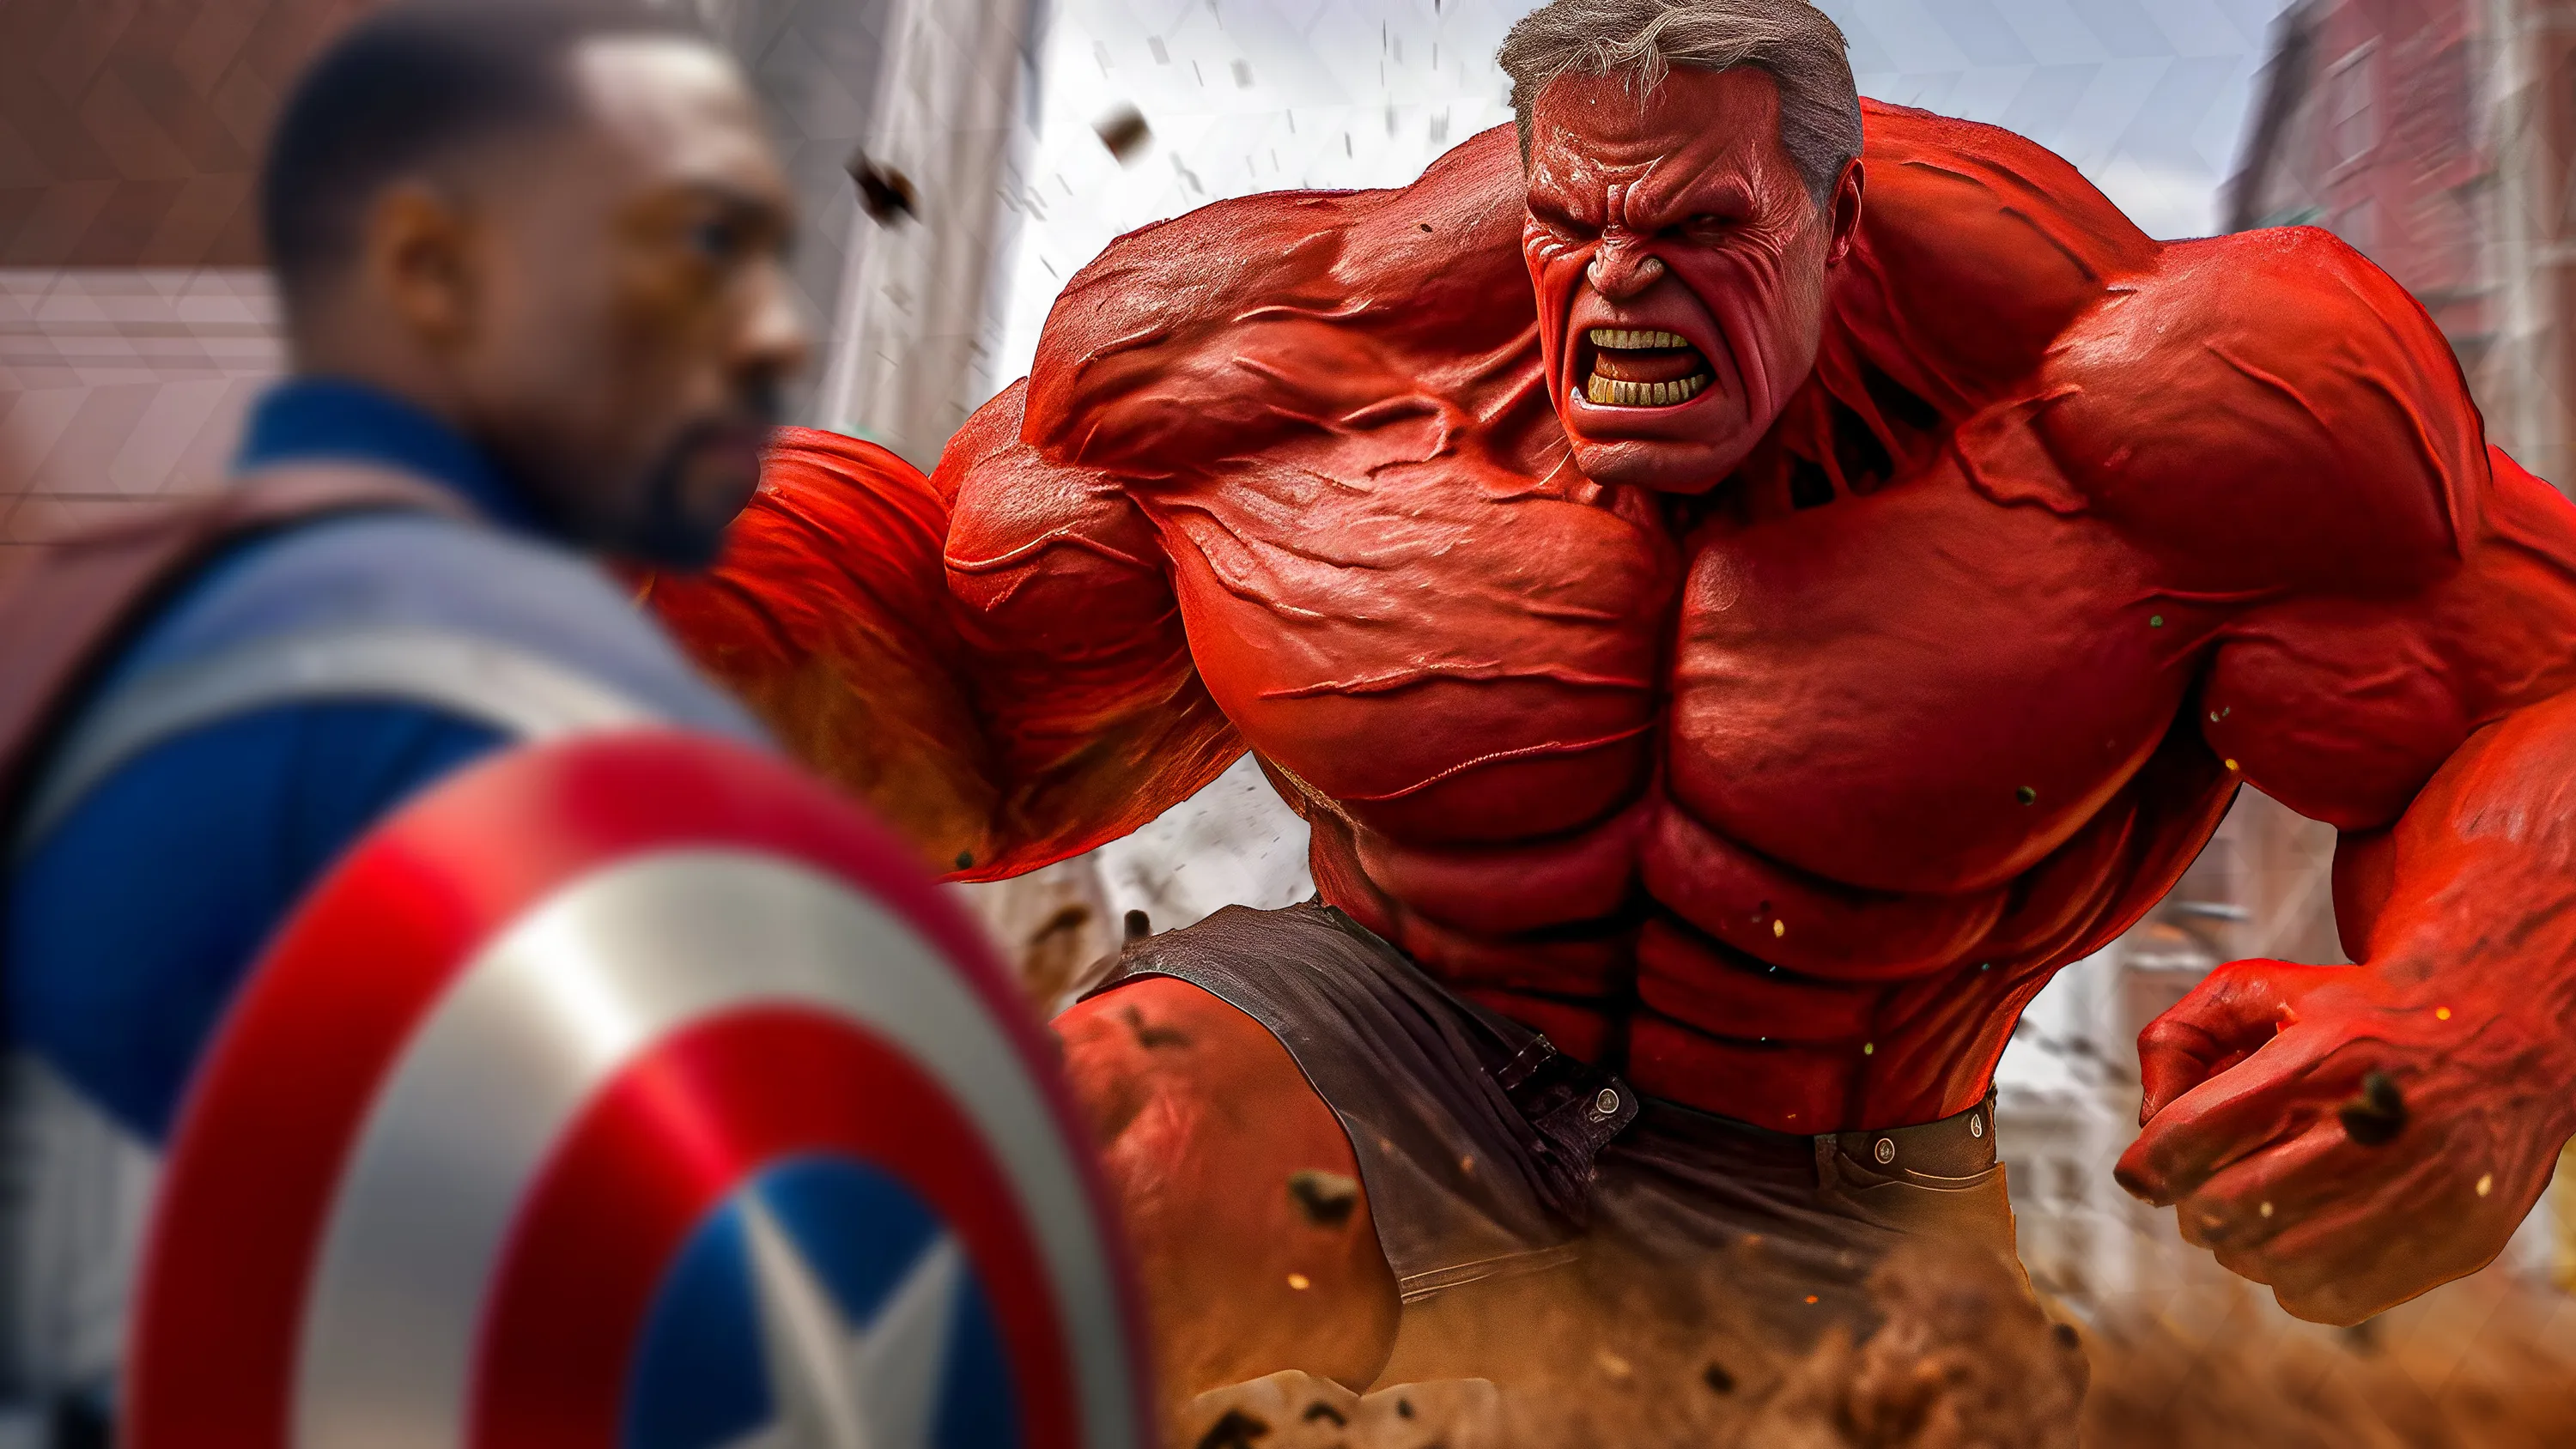 Captain America 4: Brave New World Movie Preview - Movie & Show News |  KinoCheck